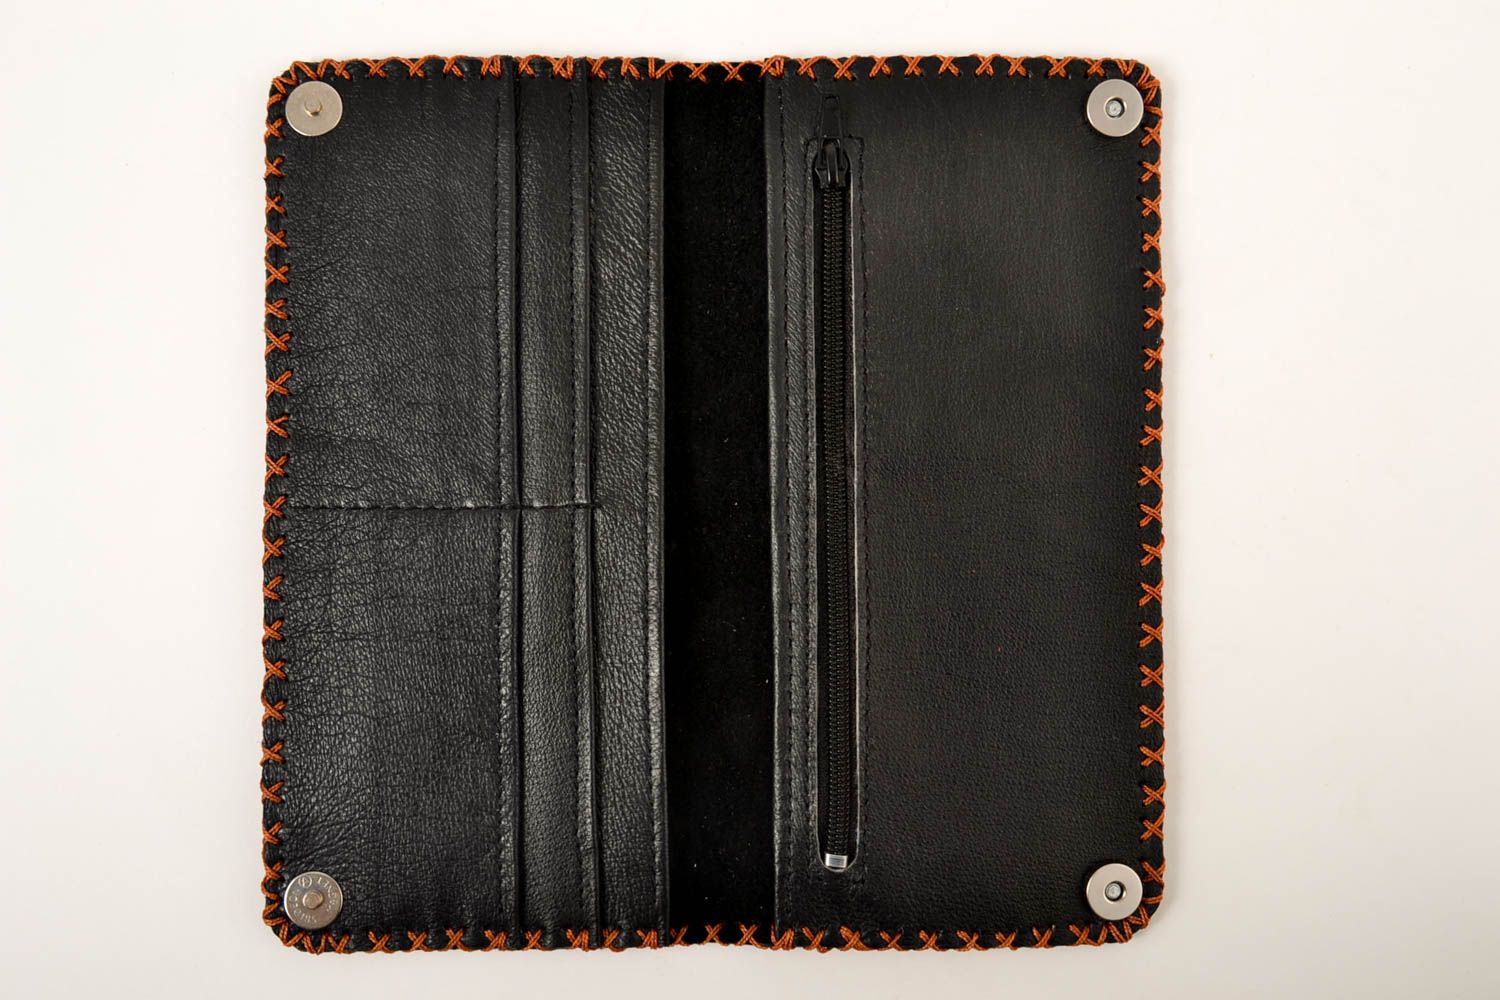 Кошелек ручной работы кожаный кошелек женское портмоне кожаный аксессуар фото 3